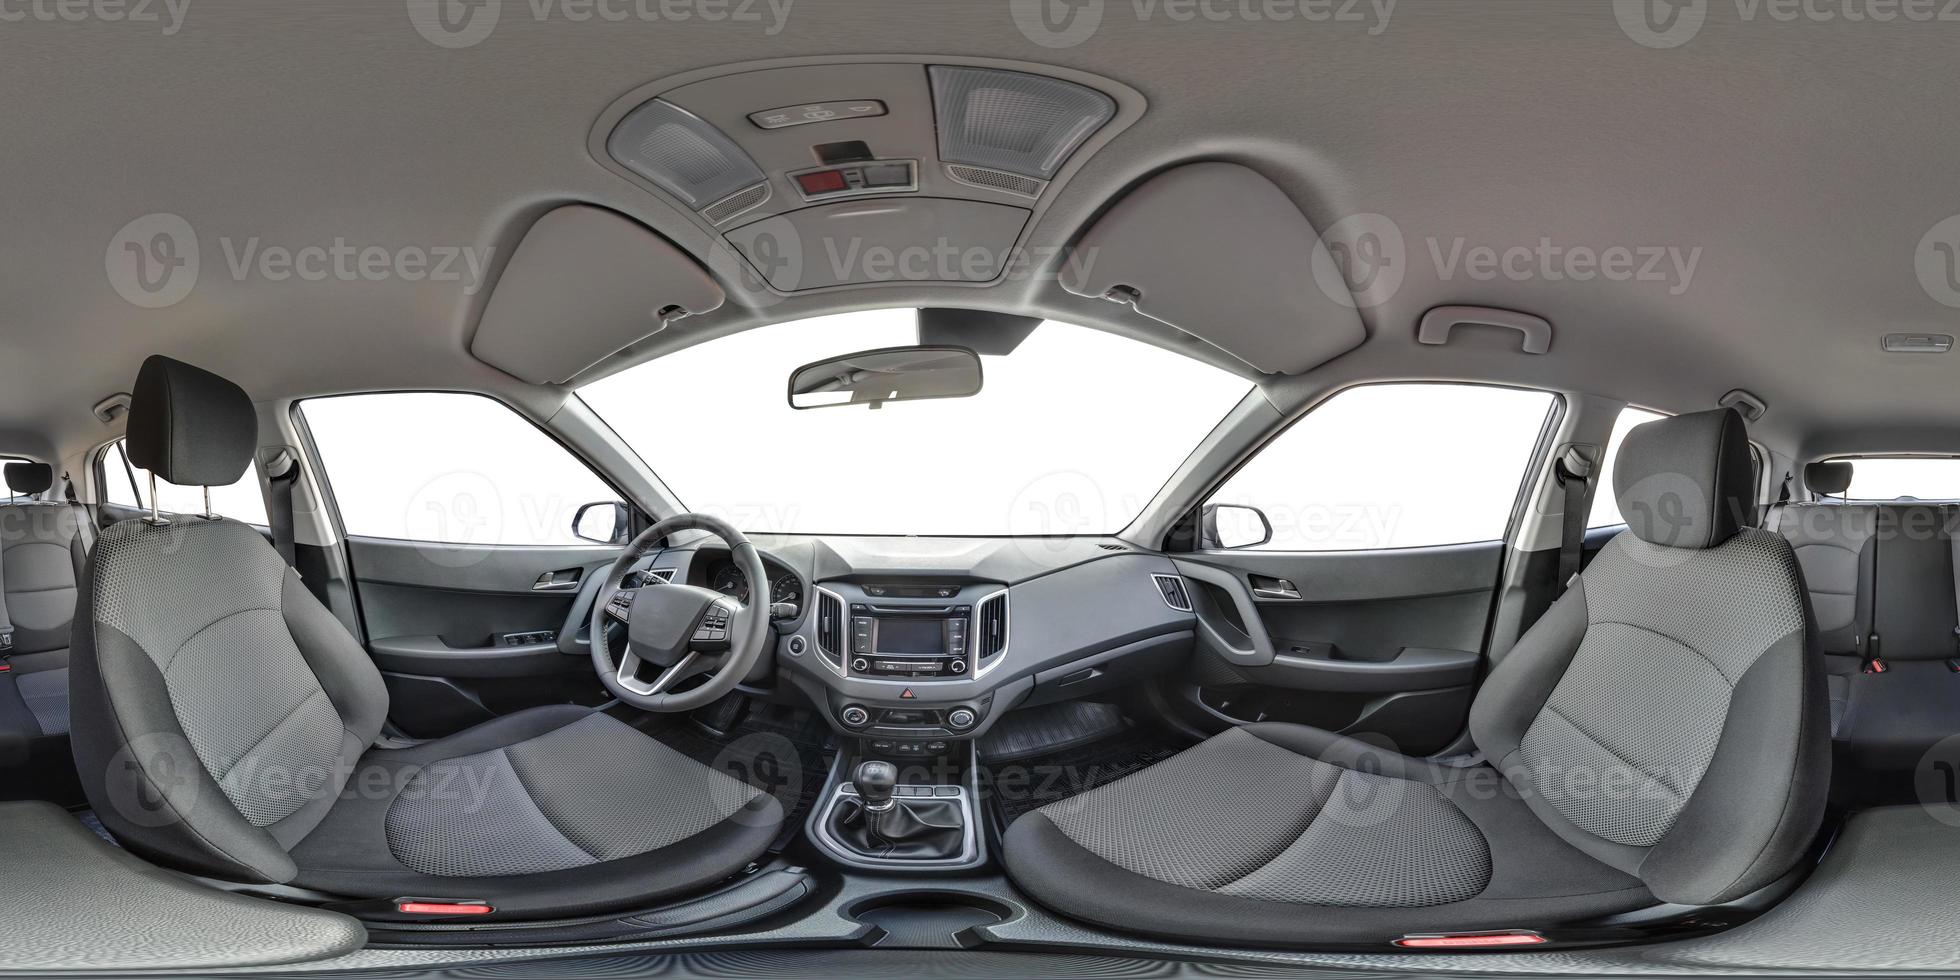 Vista panorâmica de 360º ângulo no interior de couro do carro moderno de prestígio. panorama esférico equidistante equidistante perfeito de 360 por 180 graus. conteúdo vr foto